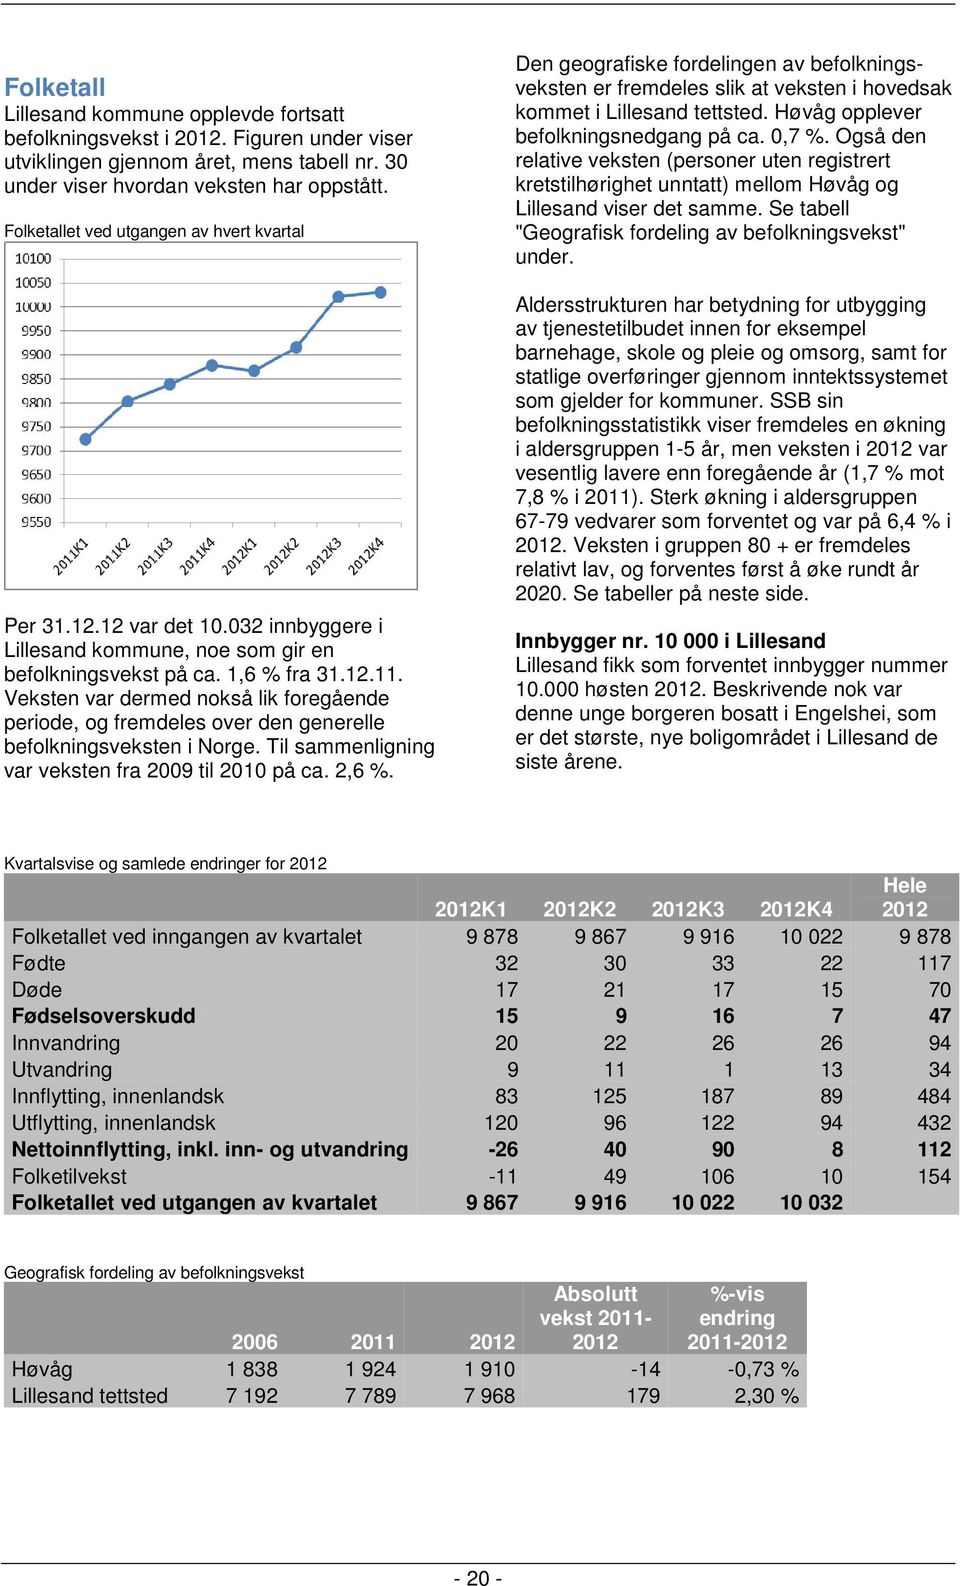 Veksten var dermed nokså lik foregående periode, og fremdeles over den generelle befolkningsveksten i Norge. Til sammenligning var veksten fra 2009 til 2010 på ca. 2,6 %.